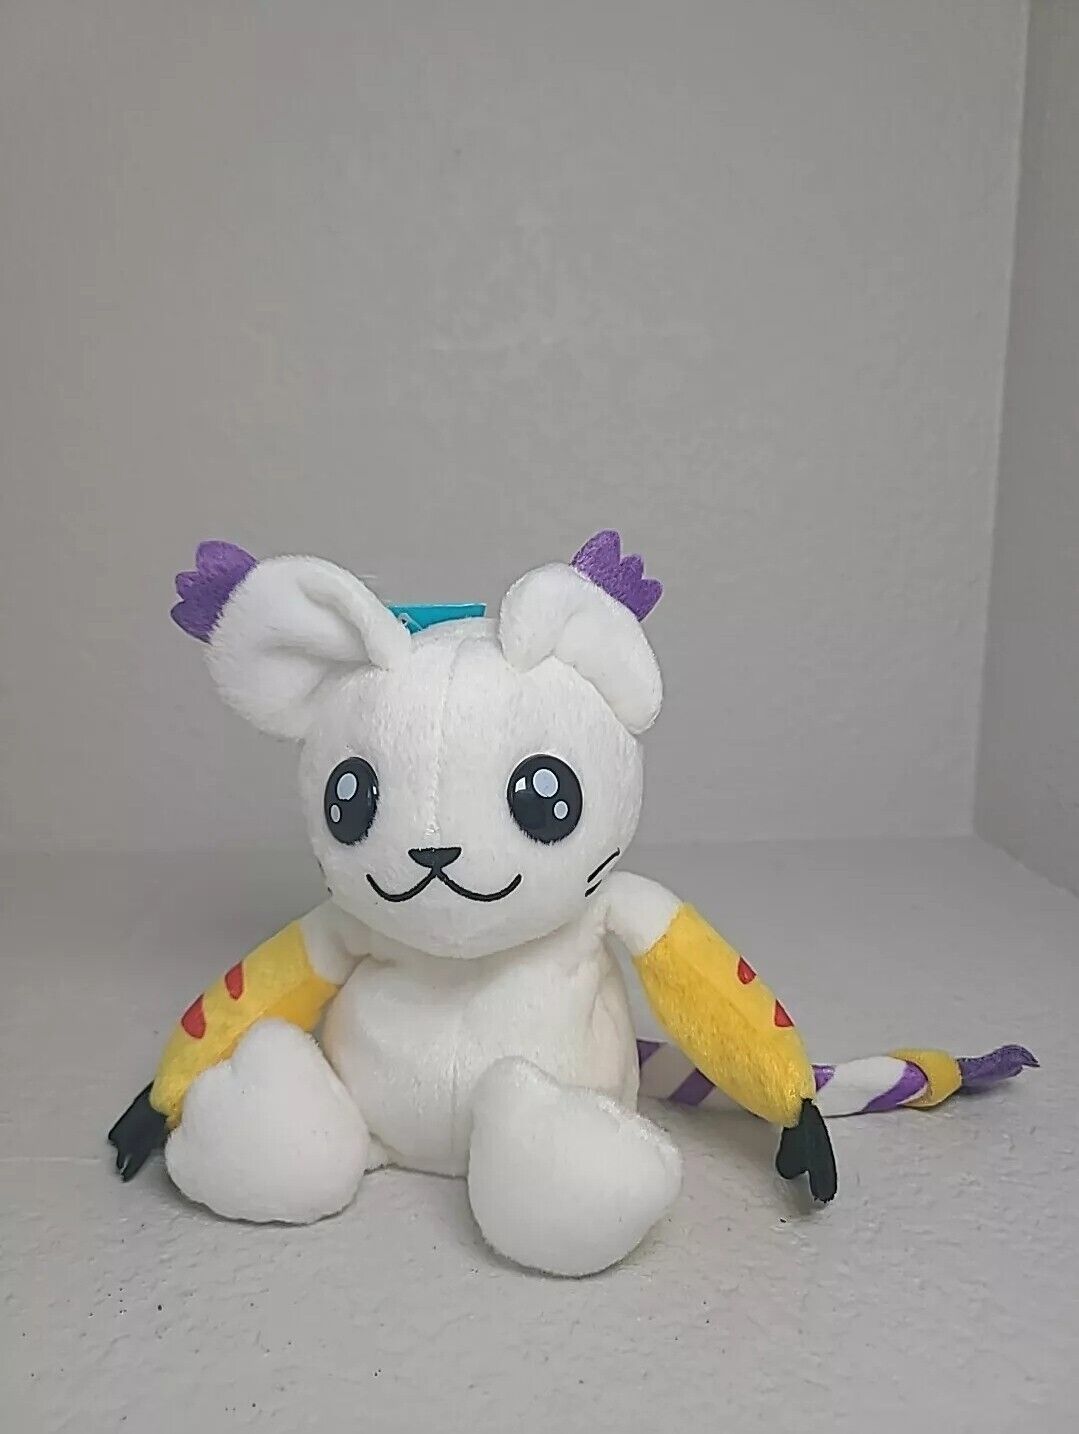 BANDAI 1997 Digimon Gatomon Vintage Rare Animal Beanie Plush Toy 6” NEW WITH TAG